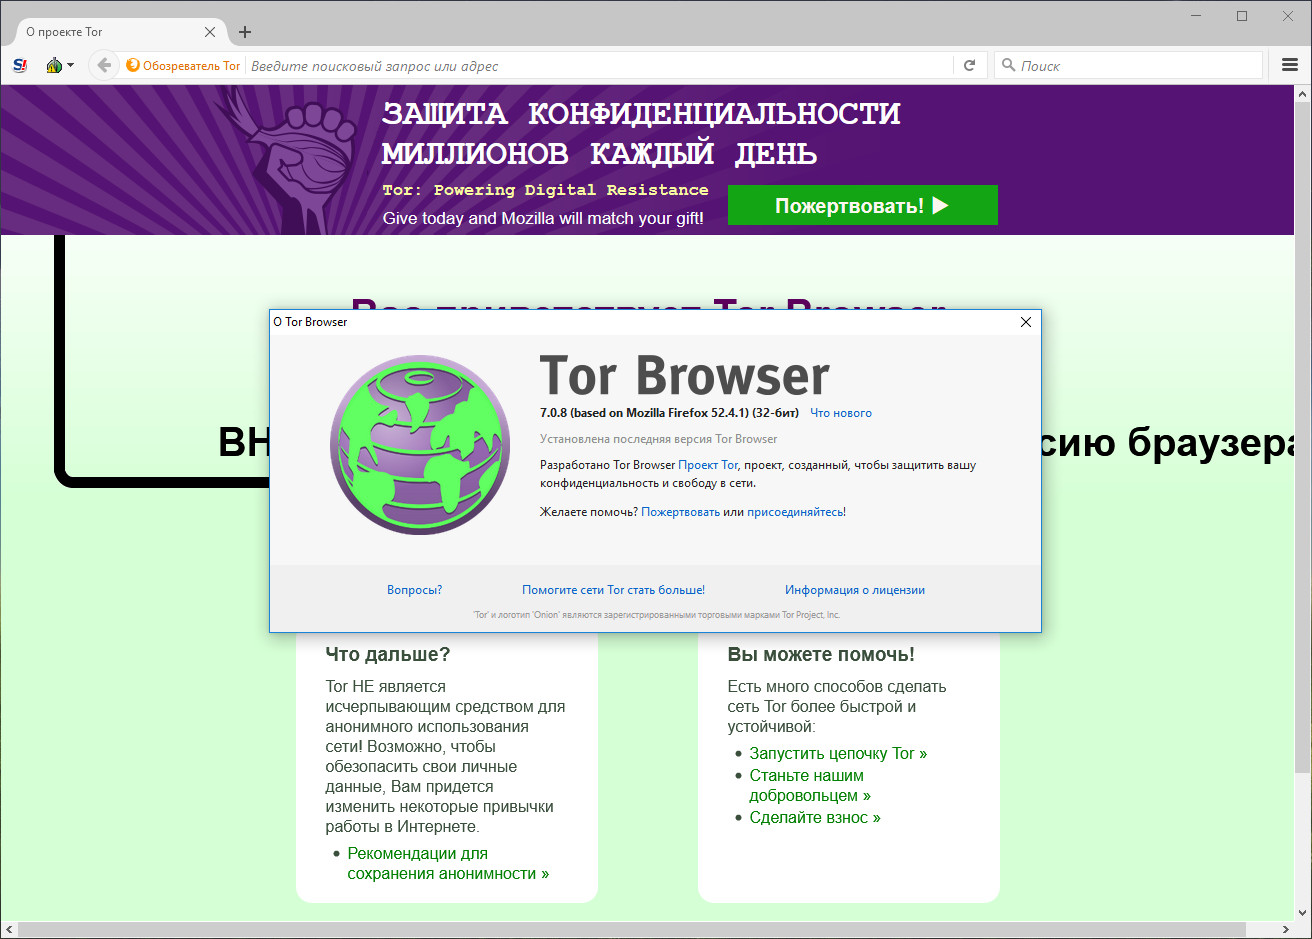 Tor browser bundle программы hudra вс о конопле